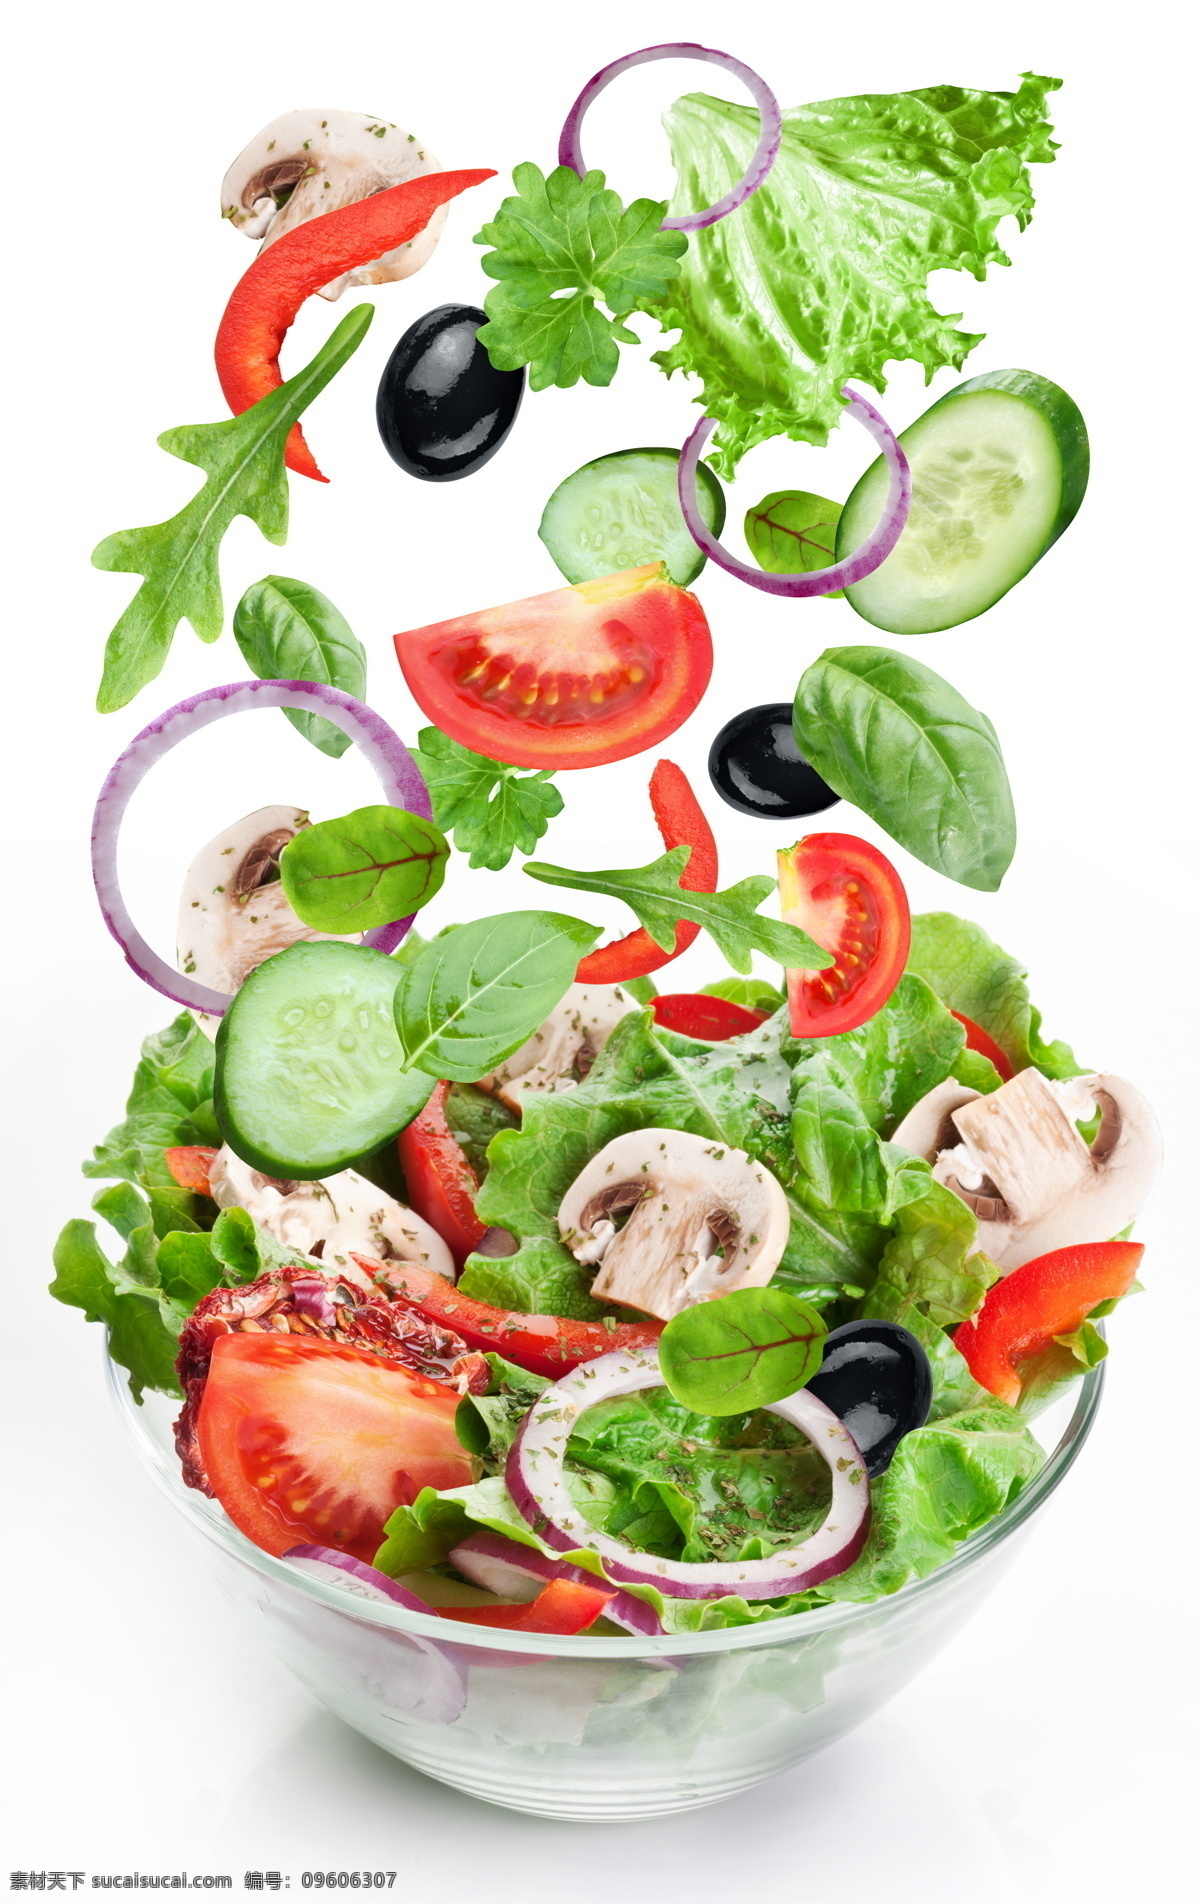 蔬菜 沙拉 蔬菜沙拉 蕃茄 黄瓜 西红柿 洋葱 美味 美食 餐饮美食 蔬菜图片